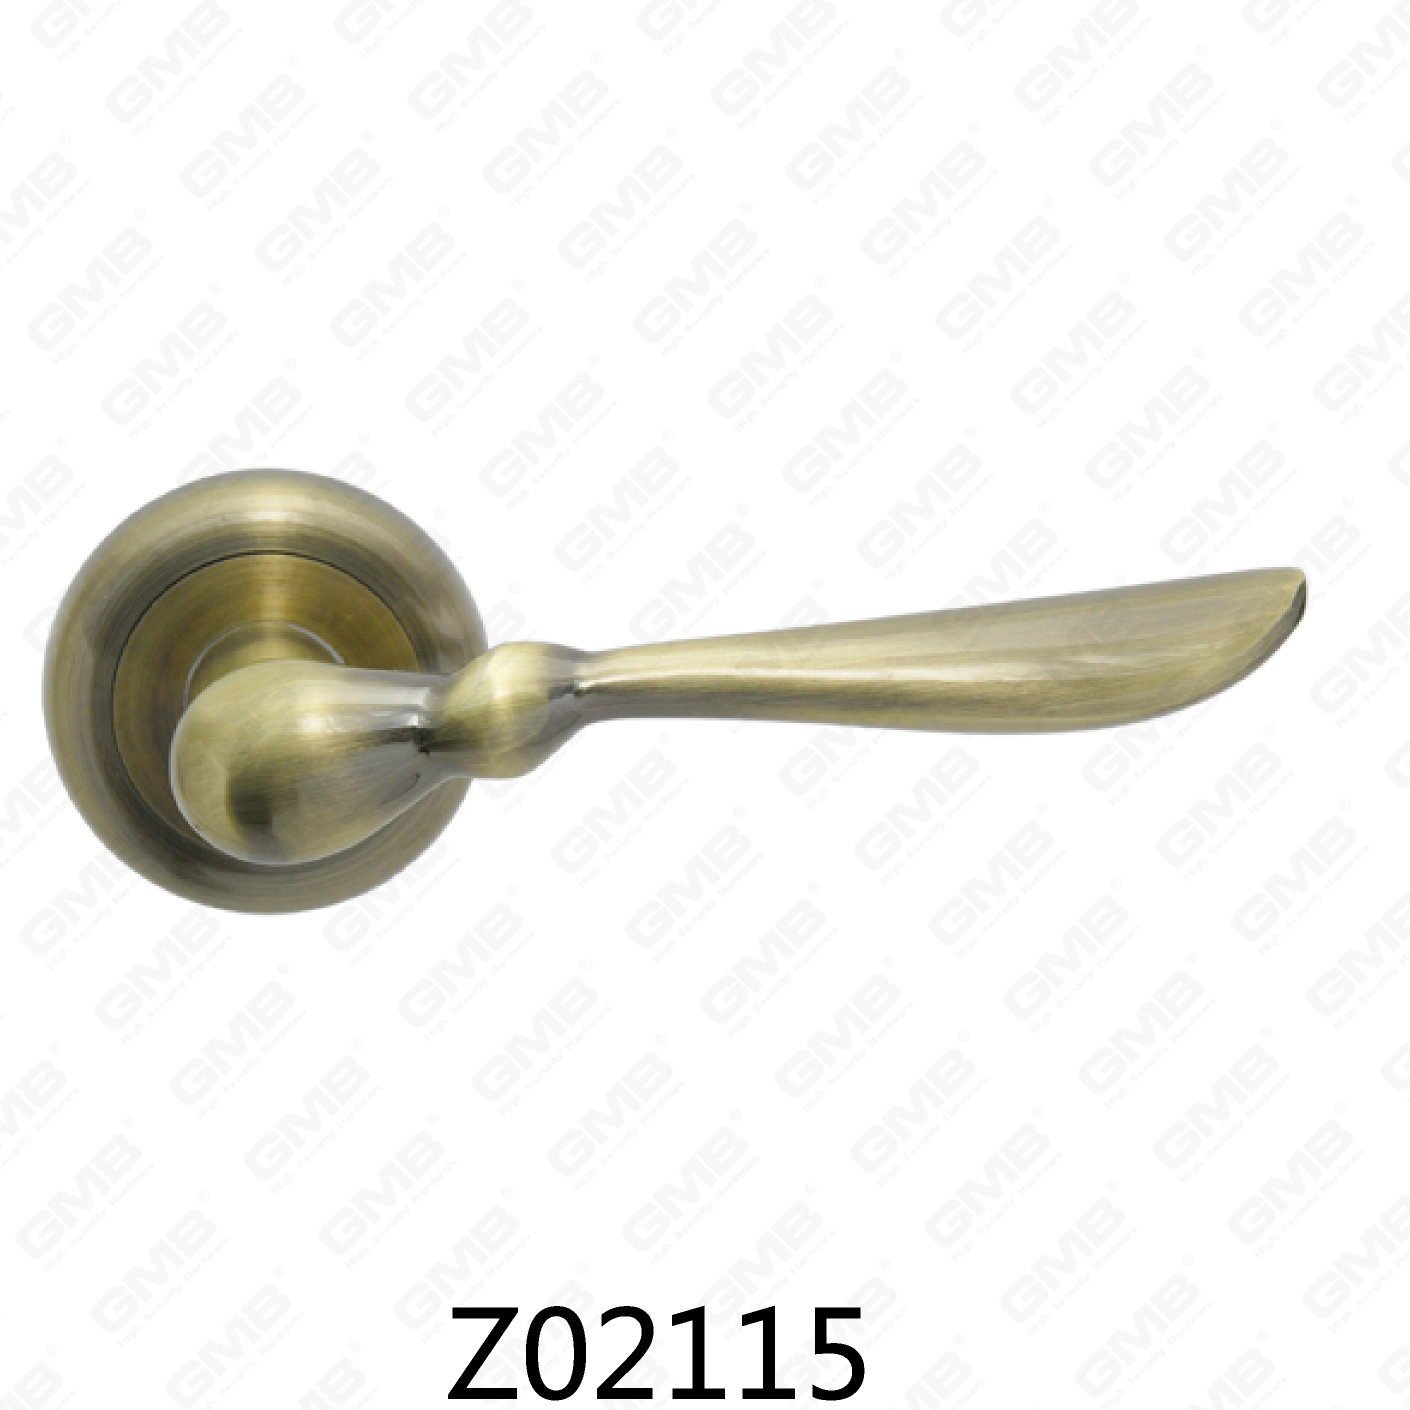 ידית דלת רוזטת אלומיניום מסגסוגת אבץ של Zamak עם רוזטה עגולה (Z02115)